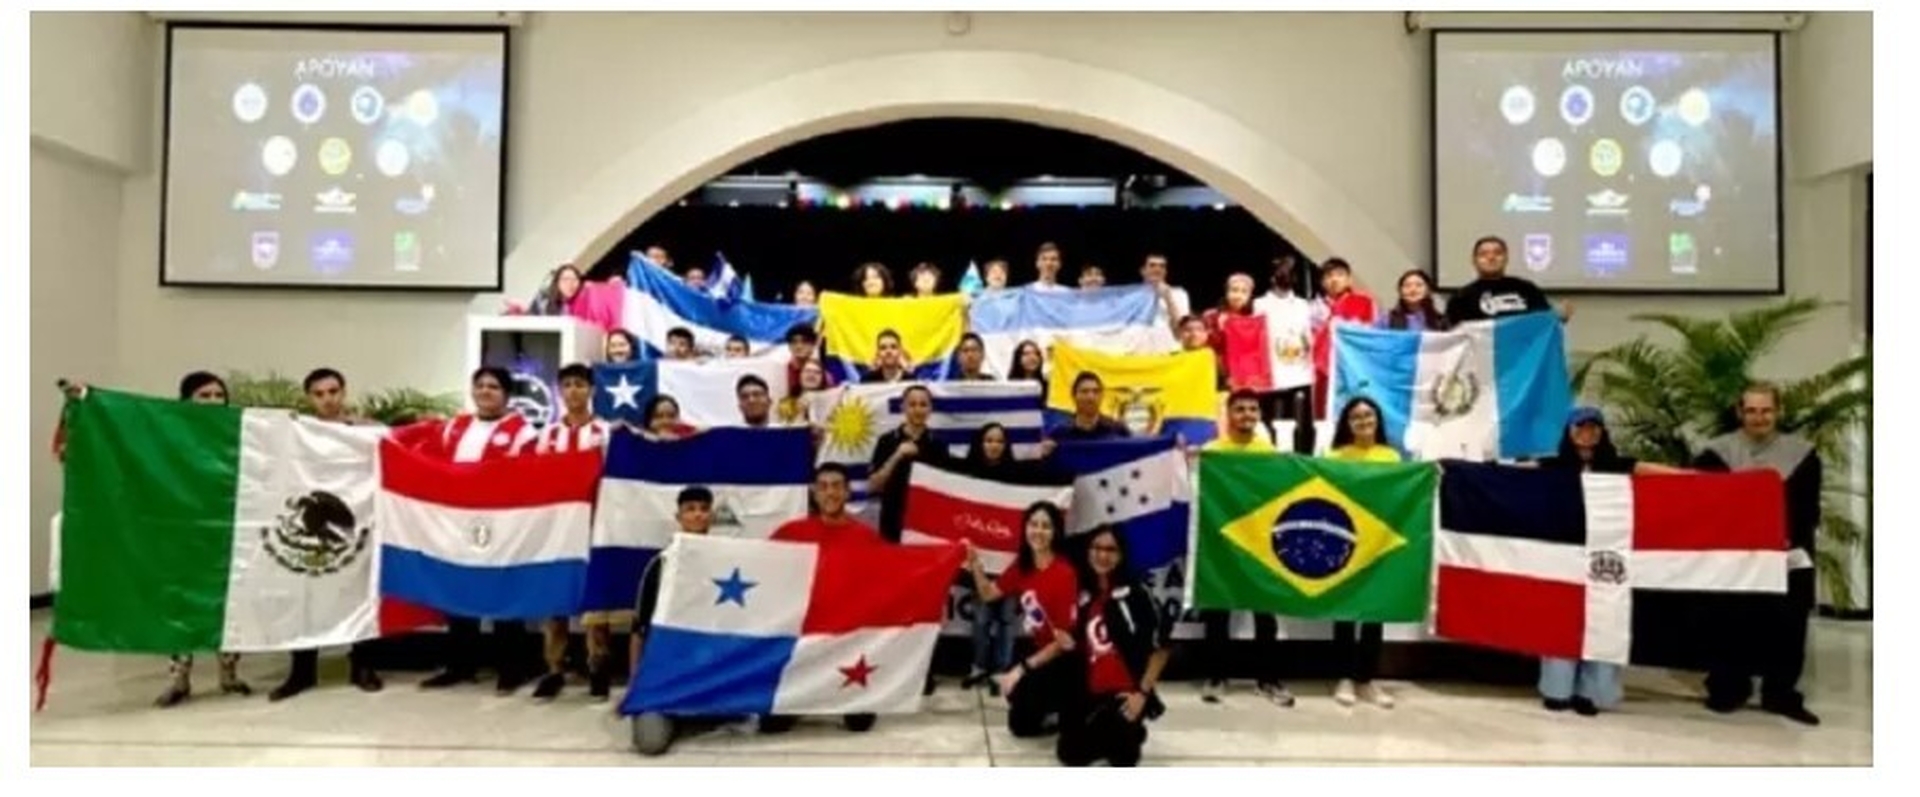 Nicaragua participa en Olimpiada Latinoamericana de Astronomía y Astronáutica en Panamá. Imagen de Radio YA 